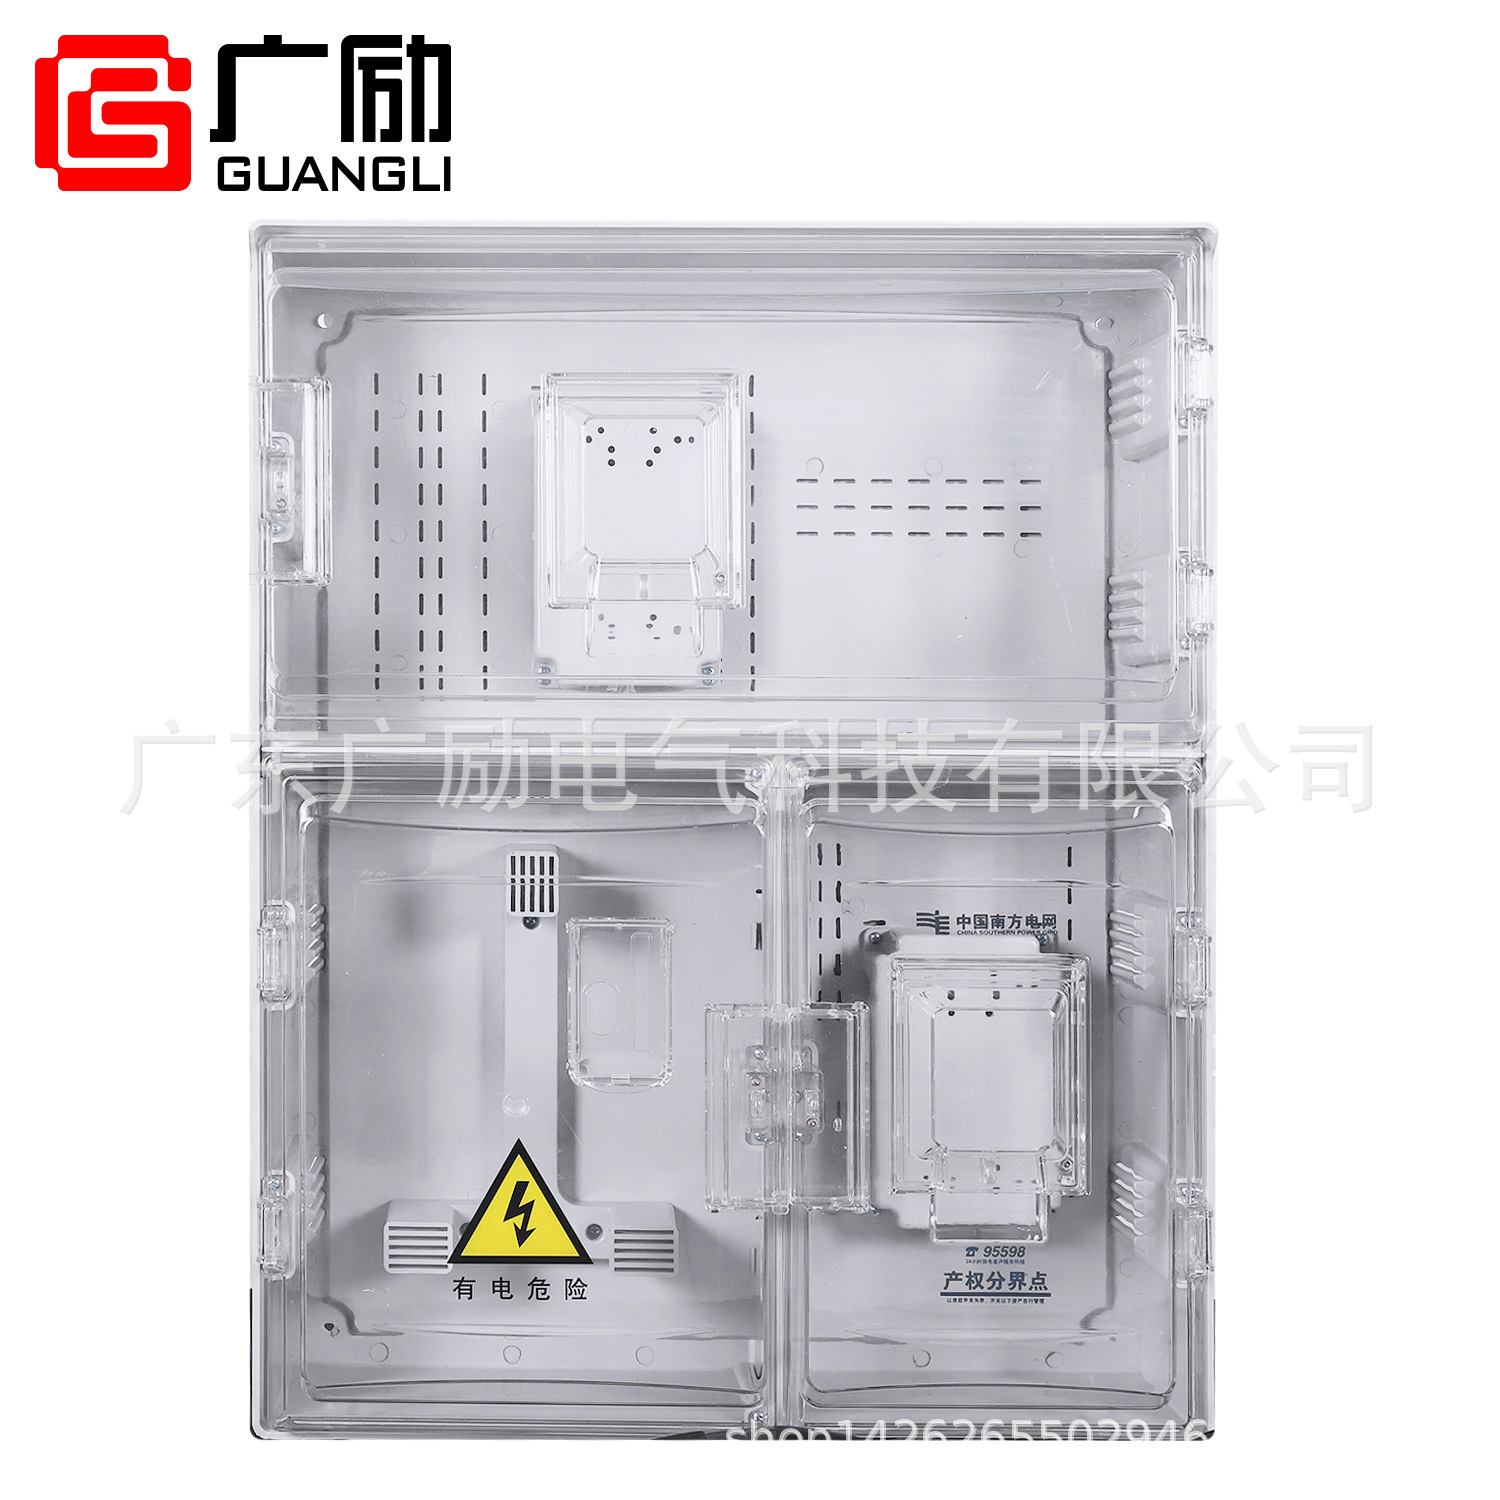 南网费控塑料三相一表位动力电表箱 透明电能计量箱A1-D 防雨表箱